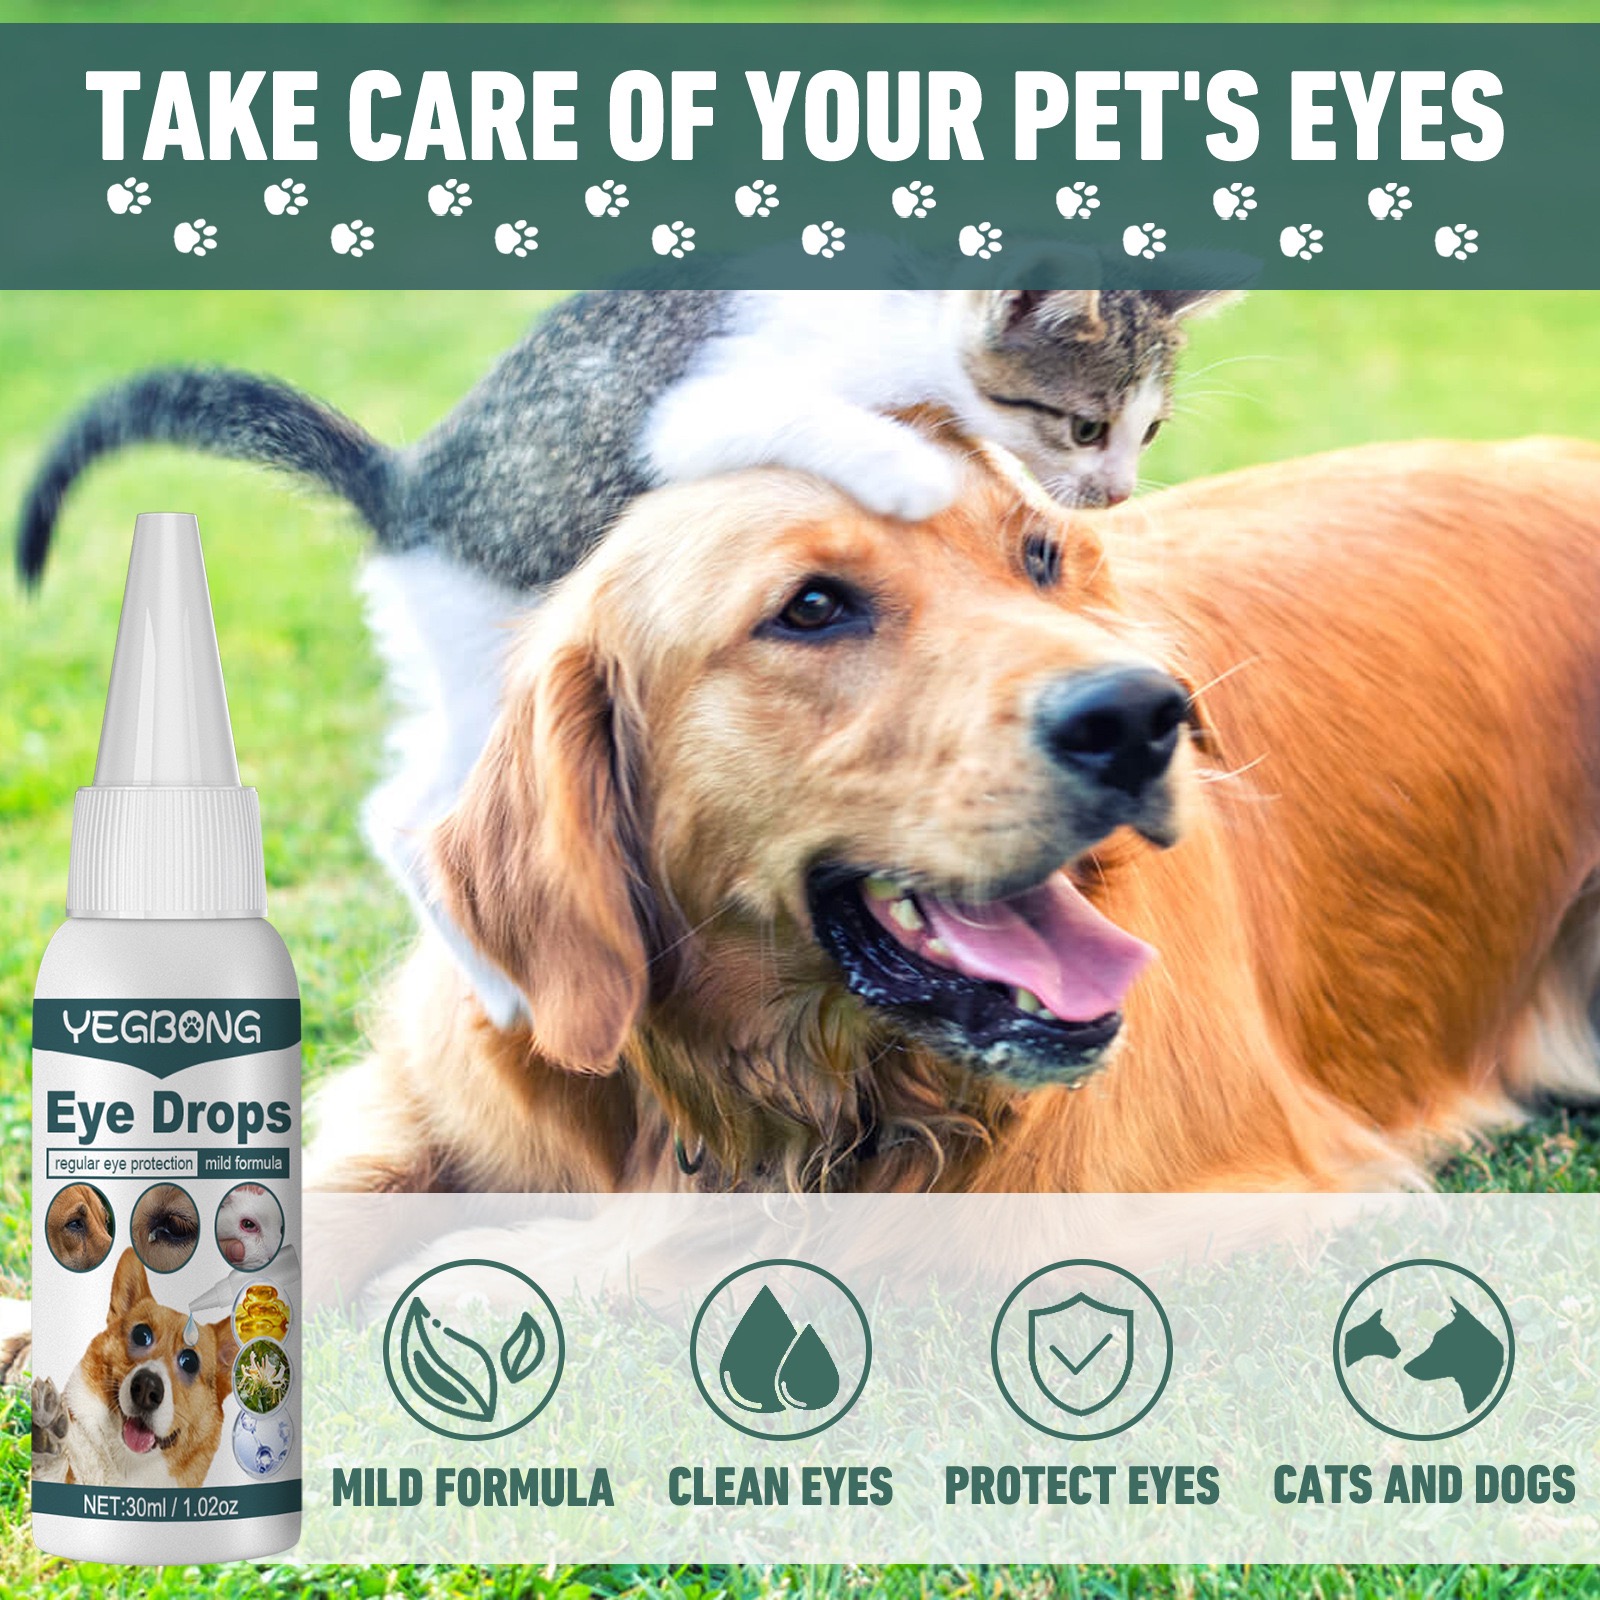 ตา หยดเดียวสะอาดทันที ยาหยอดแมว ยาหยอดสุนัข น้ำยาเช็ดคราบน้ำแมว น้ำยาเช็ดคราบน้ำสุนัข ยาหยอดสุนัขอักเสบ